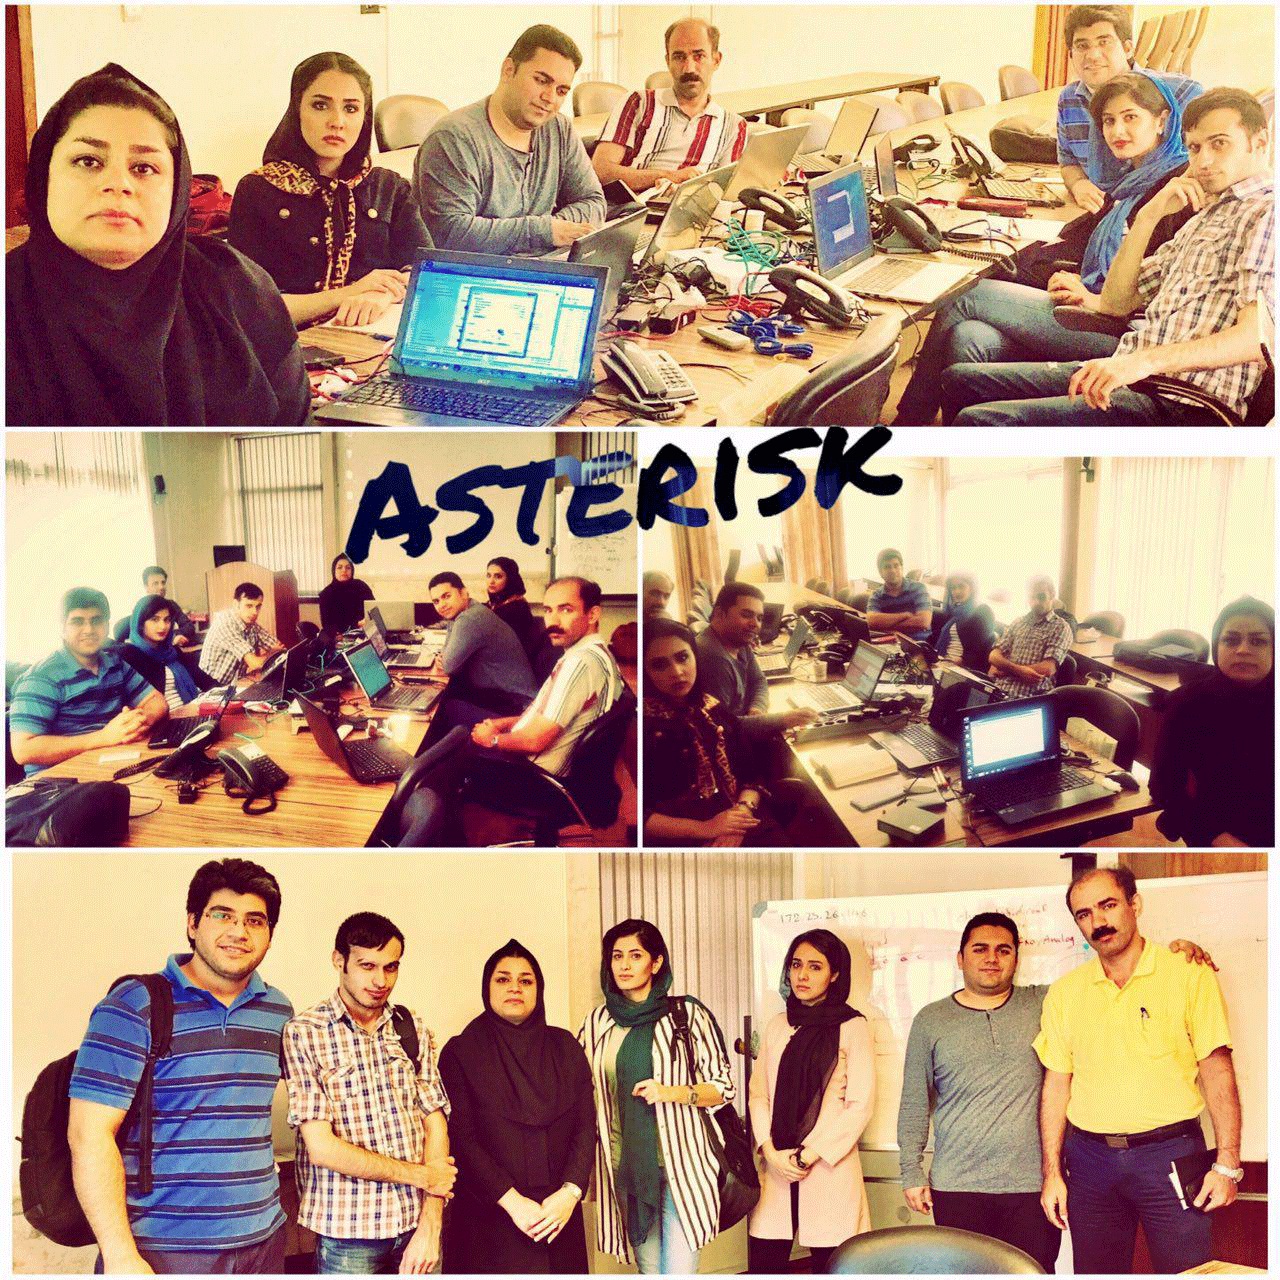 دوره آموزشی مقدماتی استریسک ASTERISK BASIC نوران برگزار شد